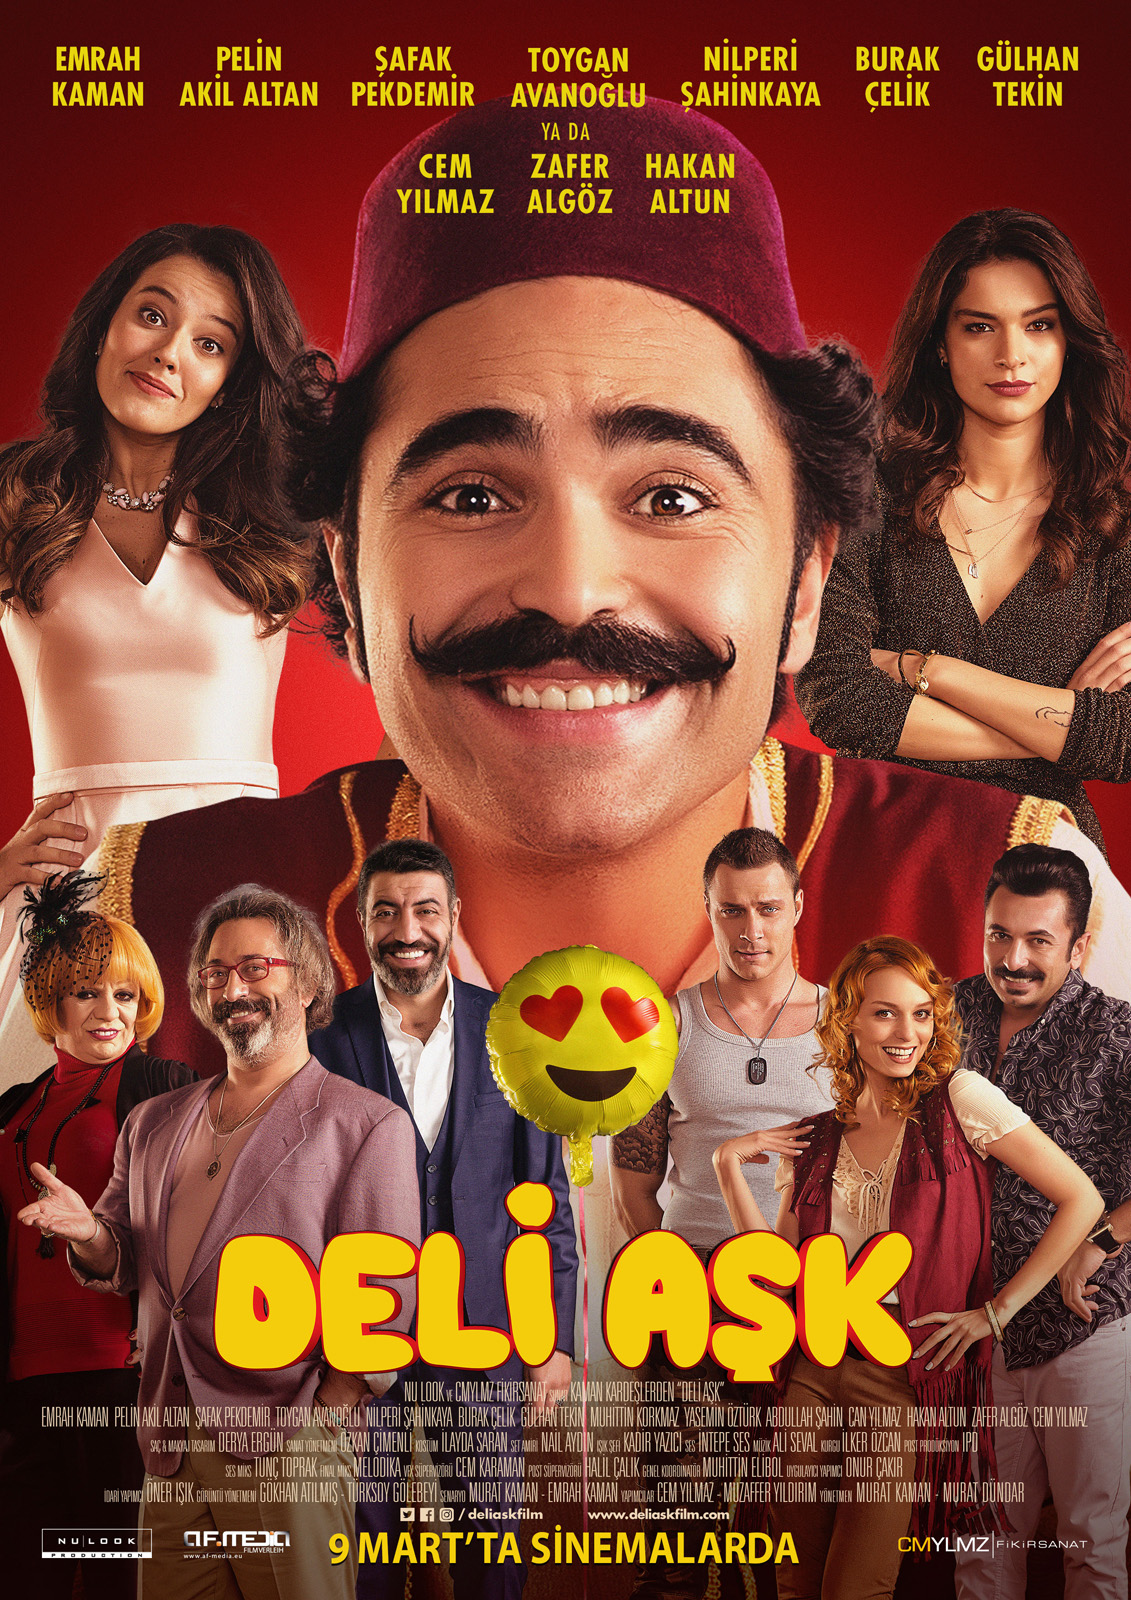 Deli Aşk Film 2017 Allociné